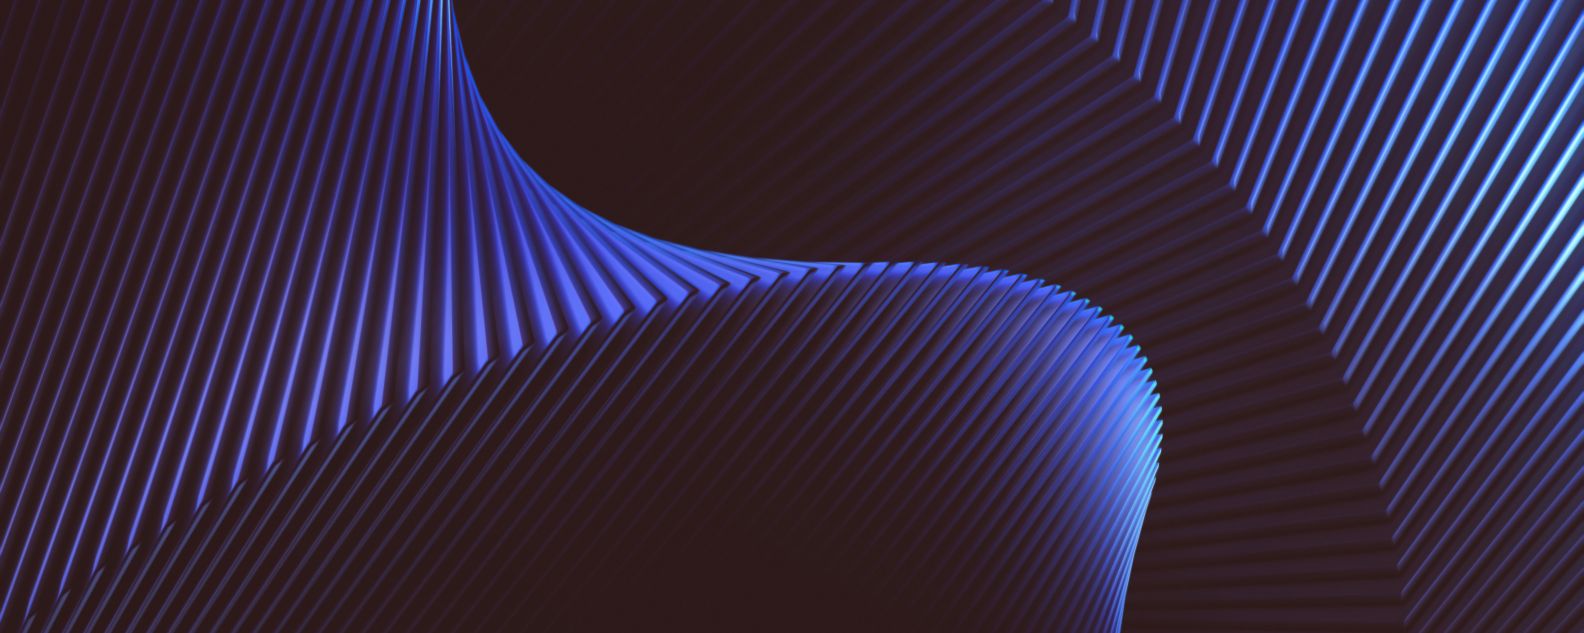 Imagen digital abstracta en azul y negro de fondo